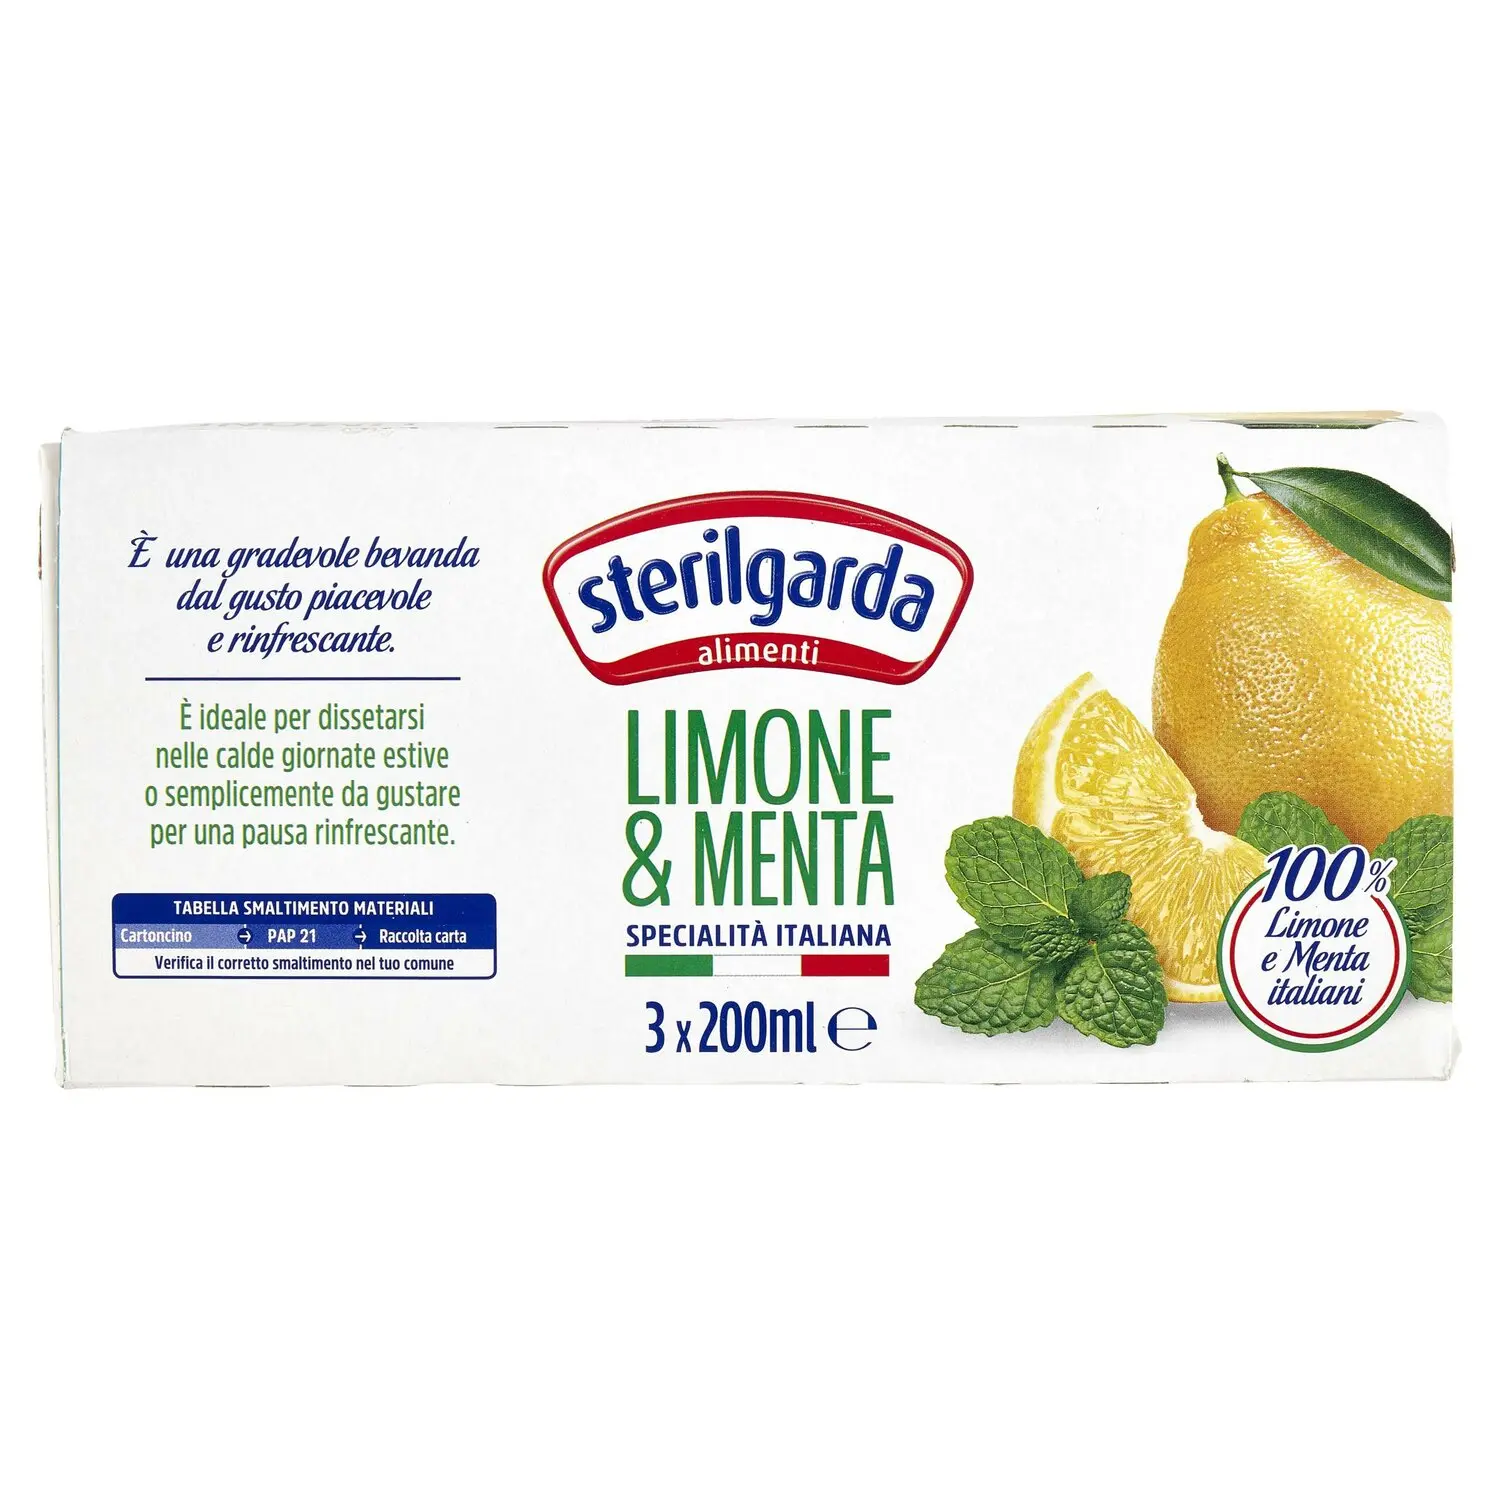 Succo Di Limone Gf ml 125